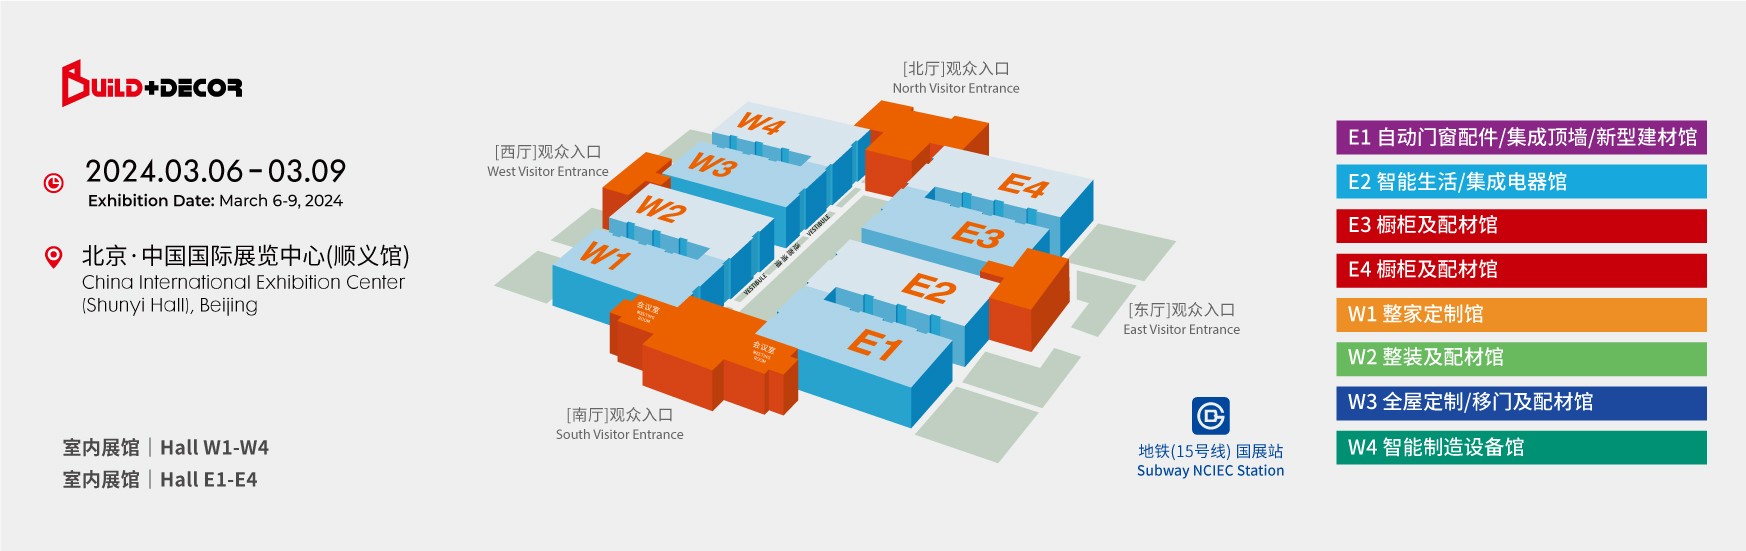 2024--北京建博会--3月-全馆平面图-01.jpg